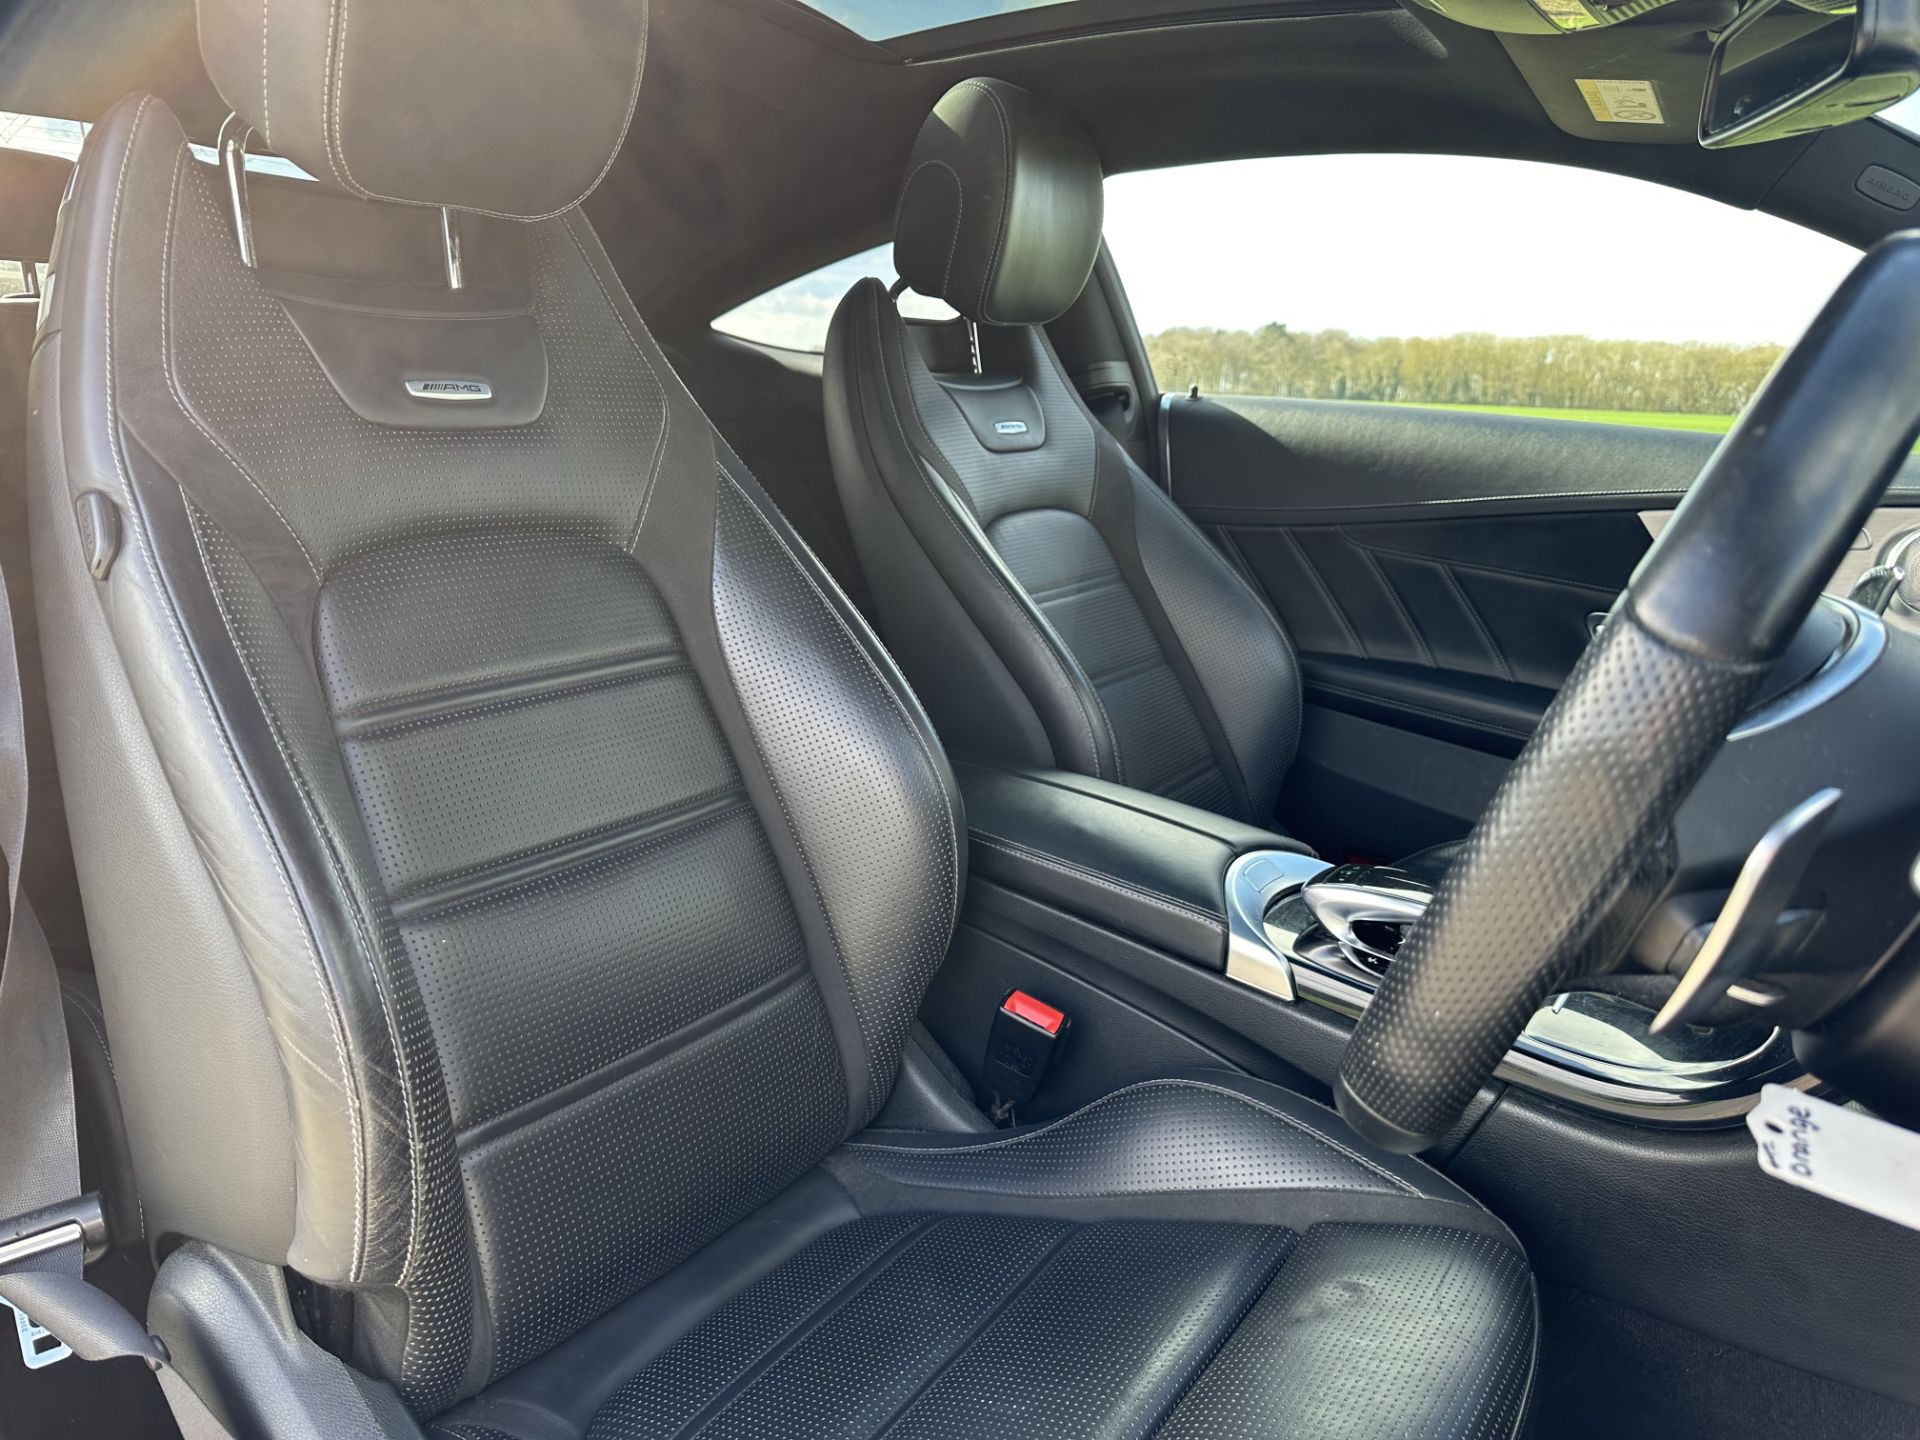 MERCEDES-BENZ C CLASS C63 Premium 2dr Auto - 2019 Model - Petrol - 59K miles - Coupe - SH PRINT - Image 25 of 34